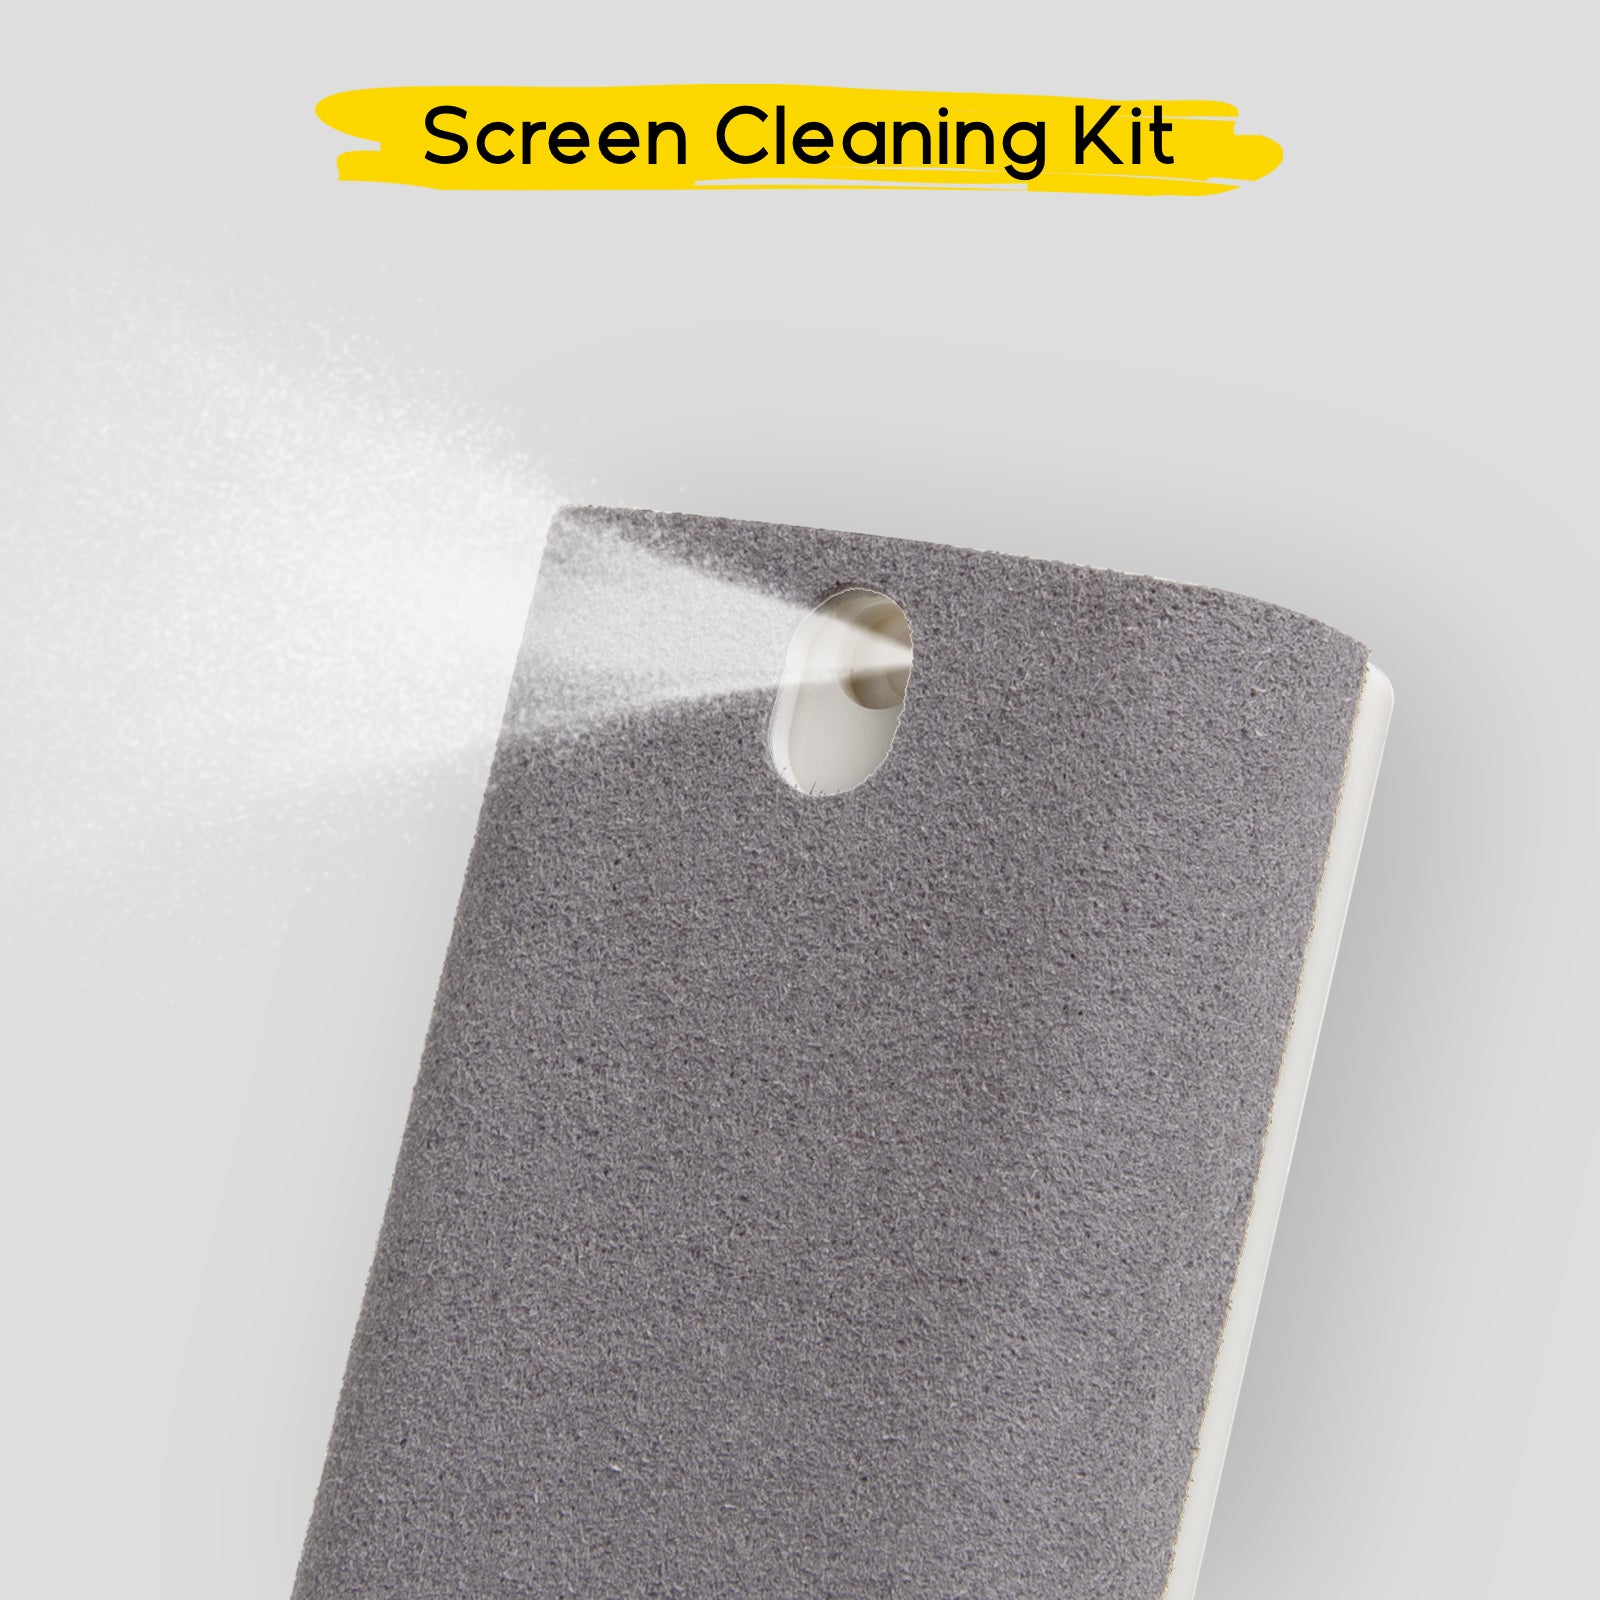 Kit de limpieza para pantallas de smartphone, tablet y PC